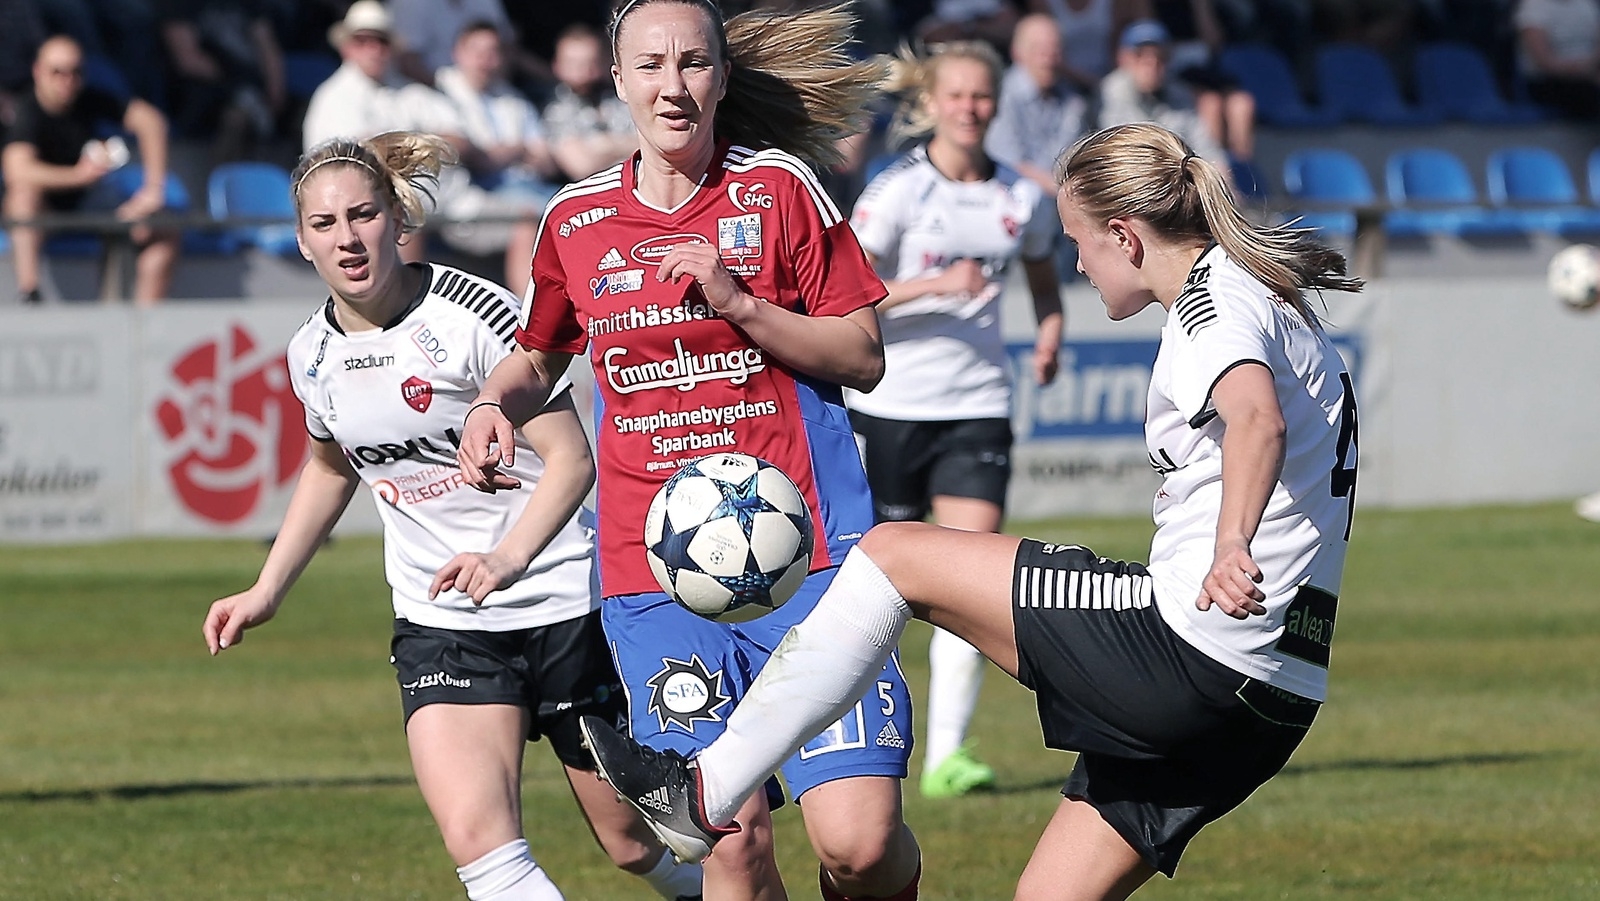 Emma Lundh är klar för spel i Vittsjö 2018...
Foto: Stefan Sandström